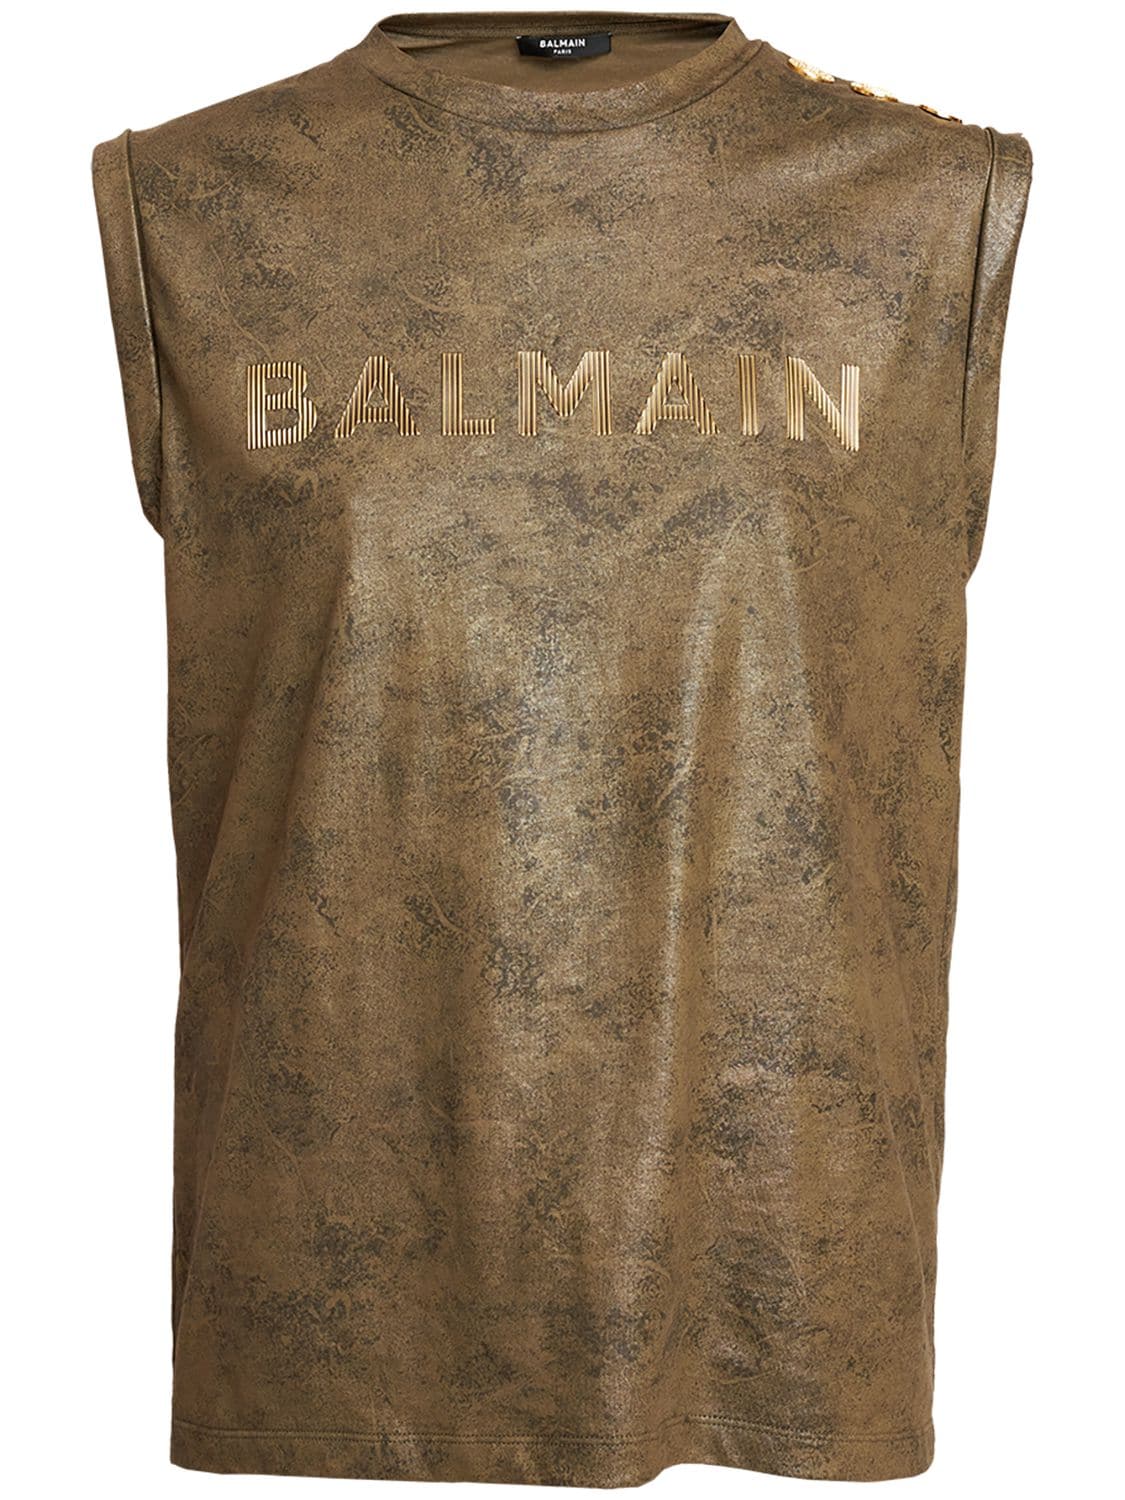 BALMAIN Logo Print Waxed Cotton Tank Top